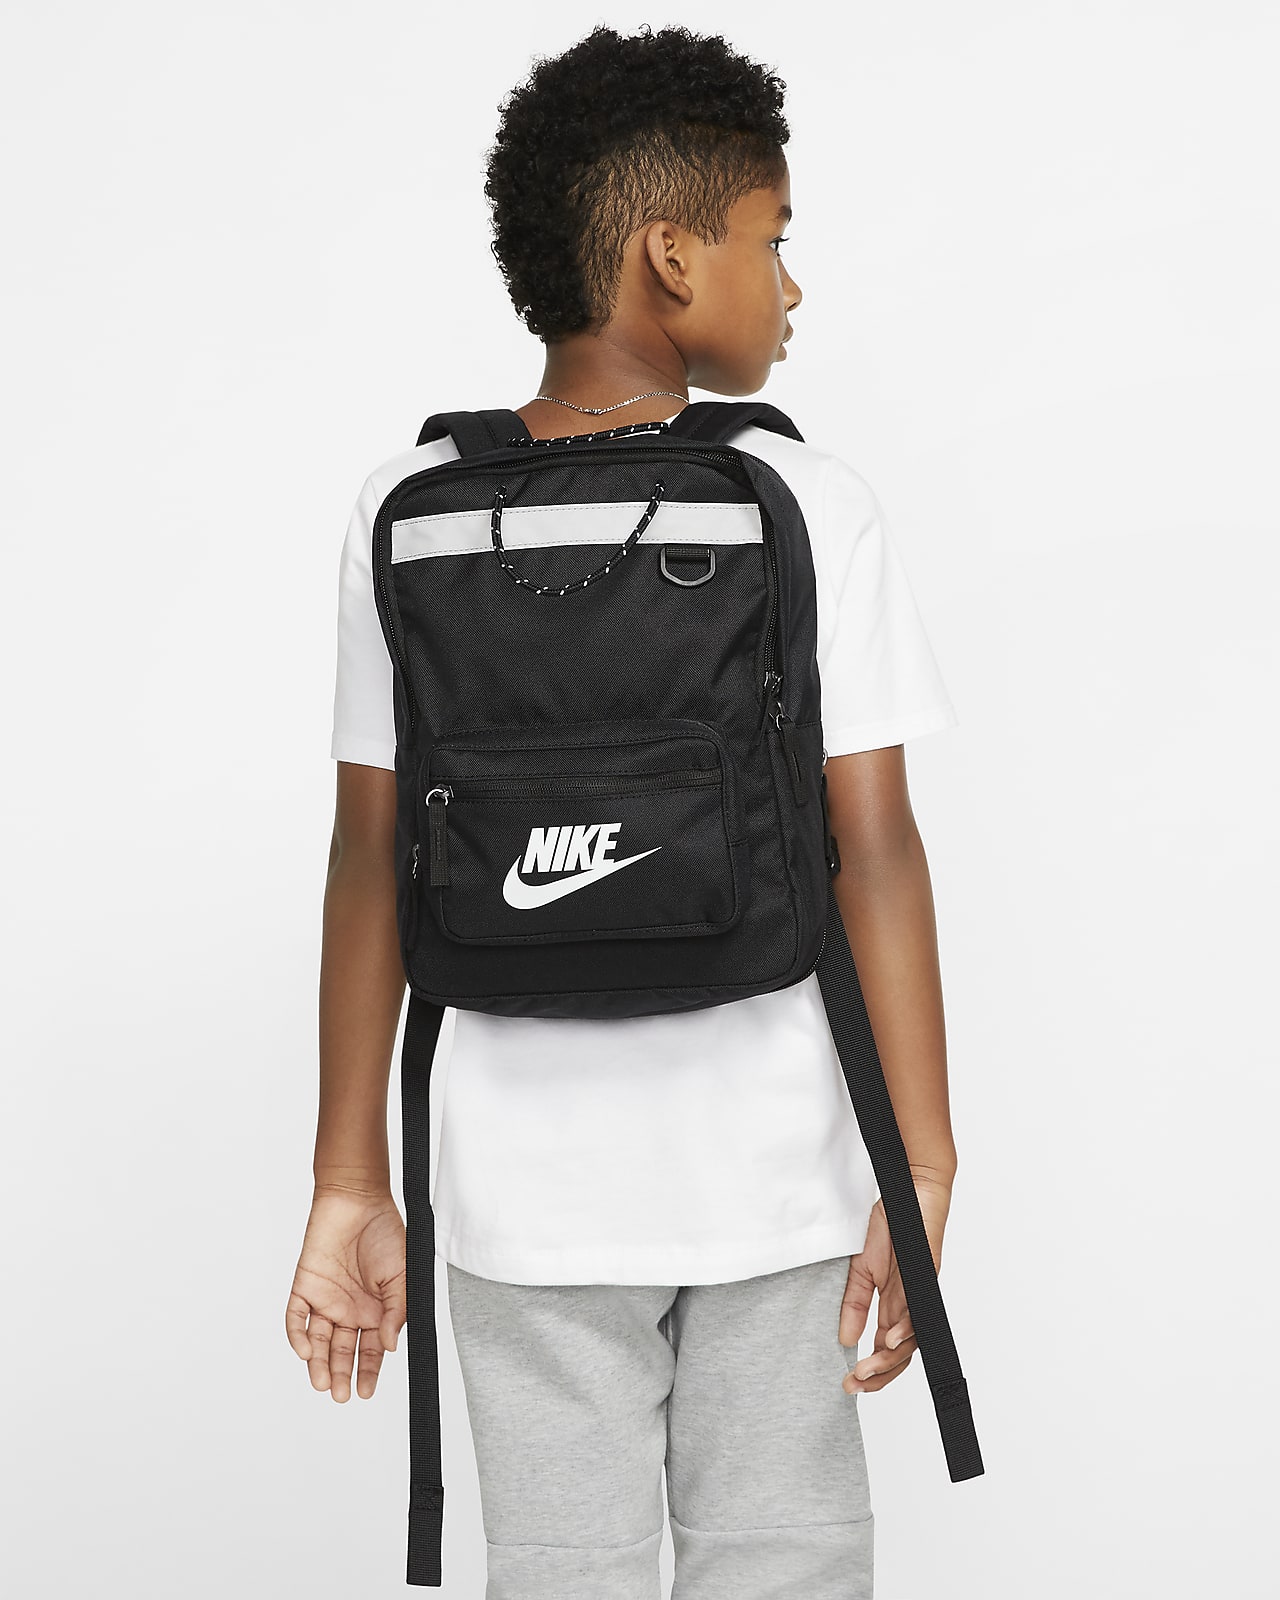 Nike Tanjun Kids' Backpack. (11L). Nike MY